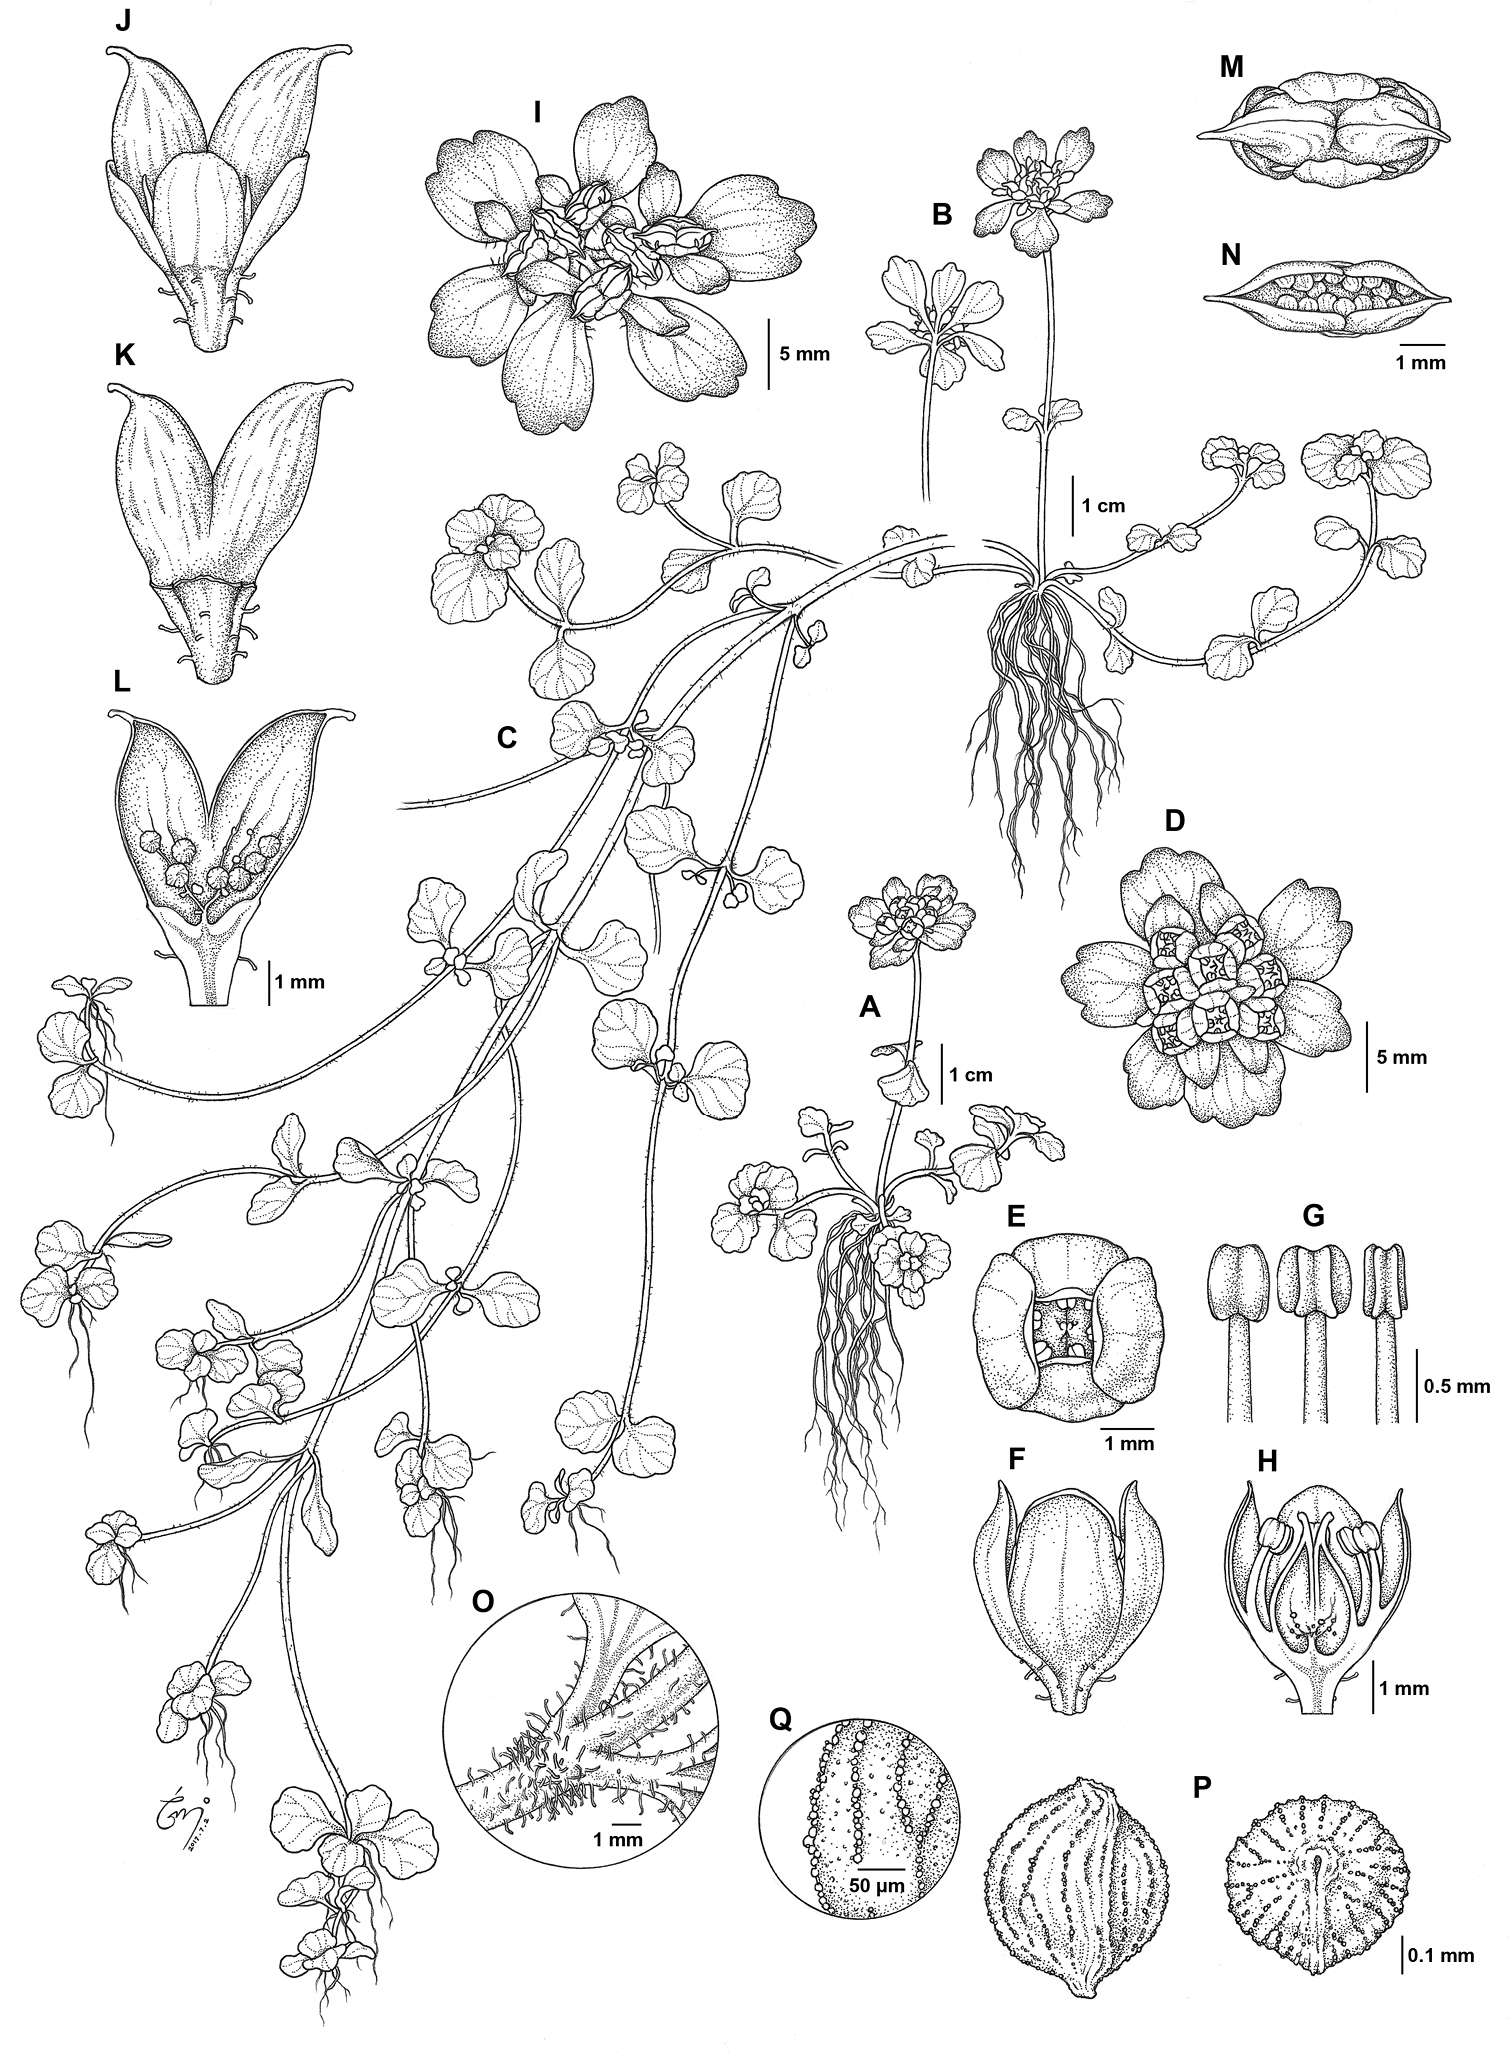 Saxifragaceae (rights holder: Yong-In Kim, Seong-Hyun Cho, Jung-Hoon Lee, Dae-Hyun Kang,  Jin Hee Park, Young-Dong Kim)